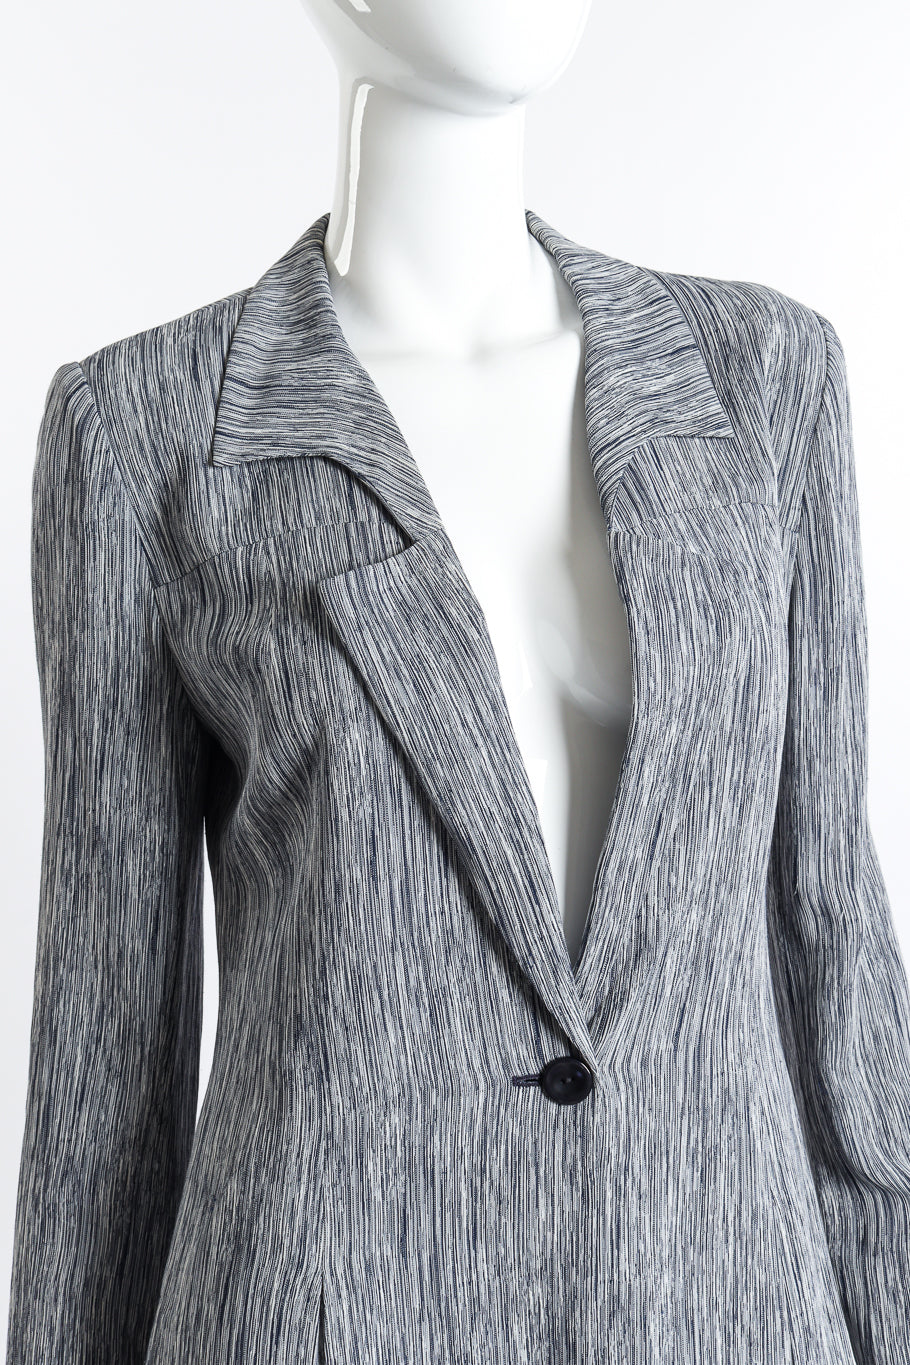 Chloé Woodgrain Stripe Jacket & Pant Set front on mannequin closeup @recess la